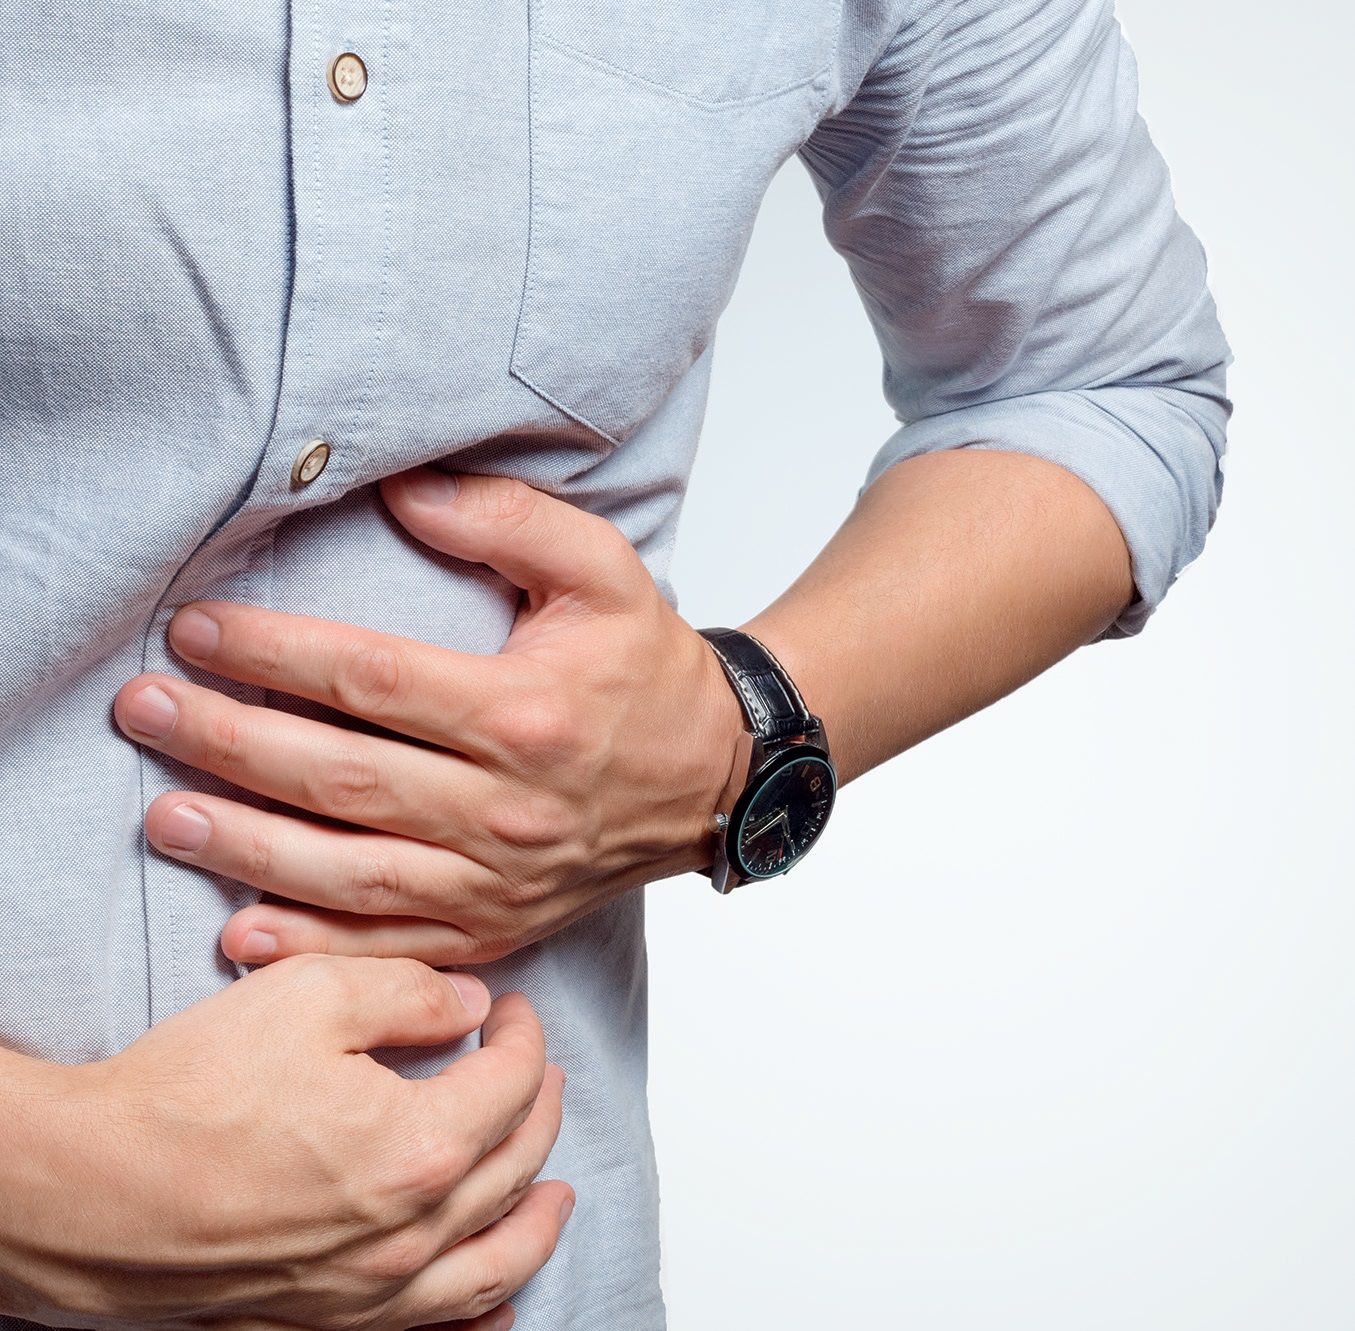 Principii de tratament în boala Crohn